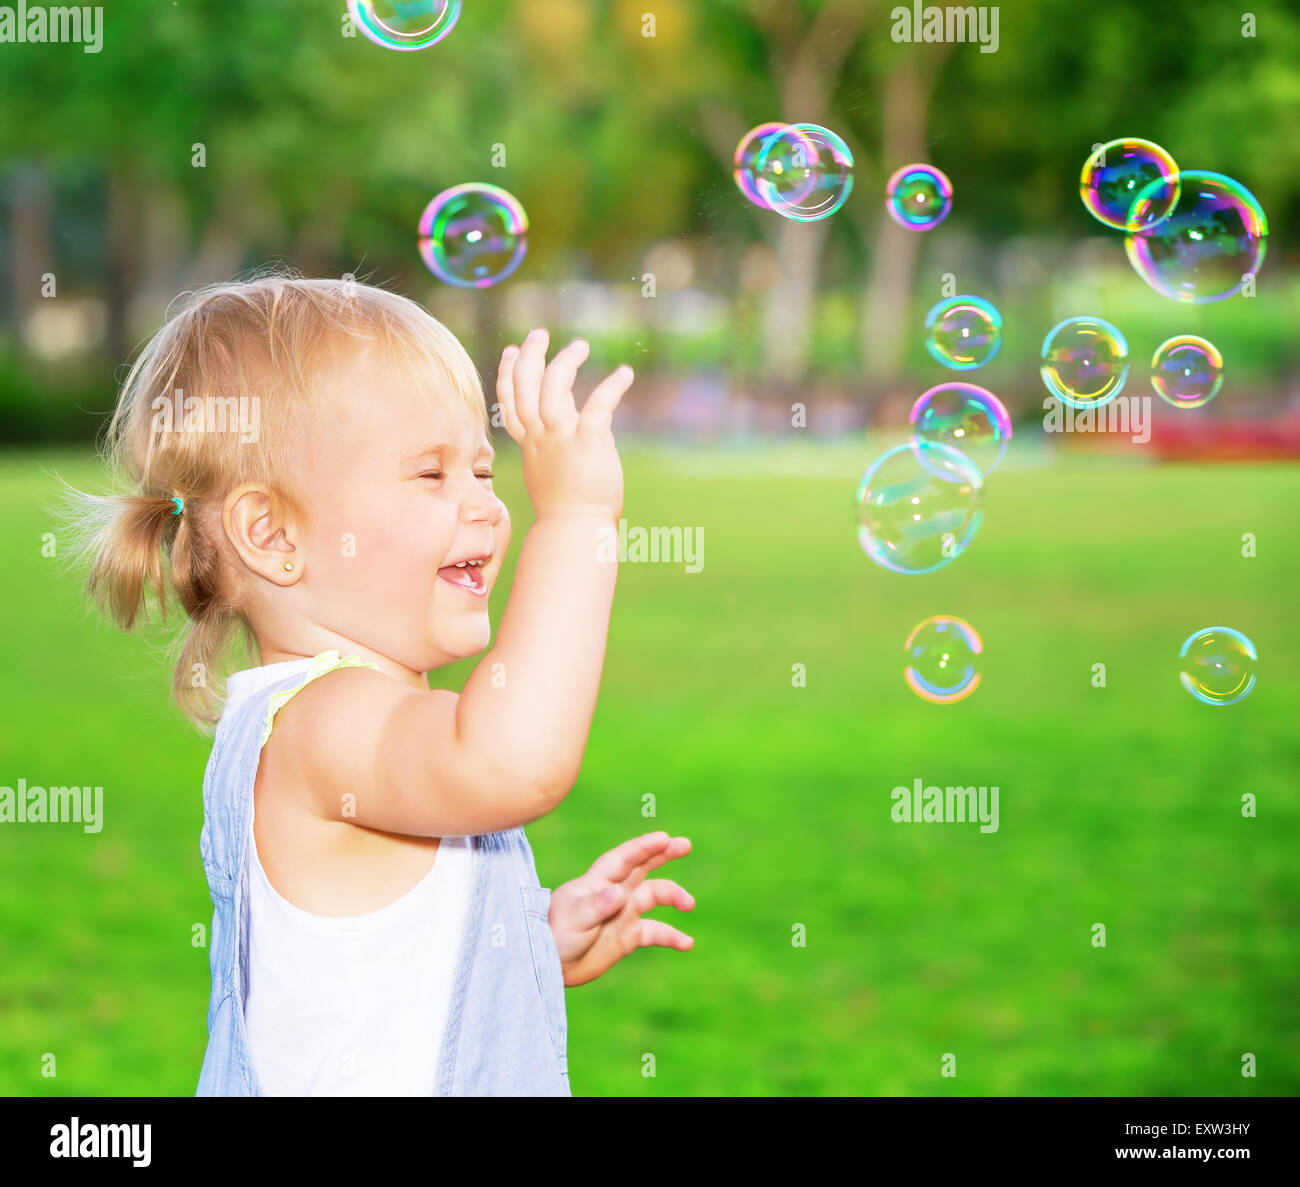 Glückliches Kind Spaß im Park, niedliche blonde Babymädchen spielt mit Seifenblasen auf dem Hof, freudige Geißlein Stockfoto